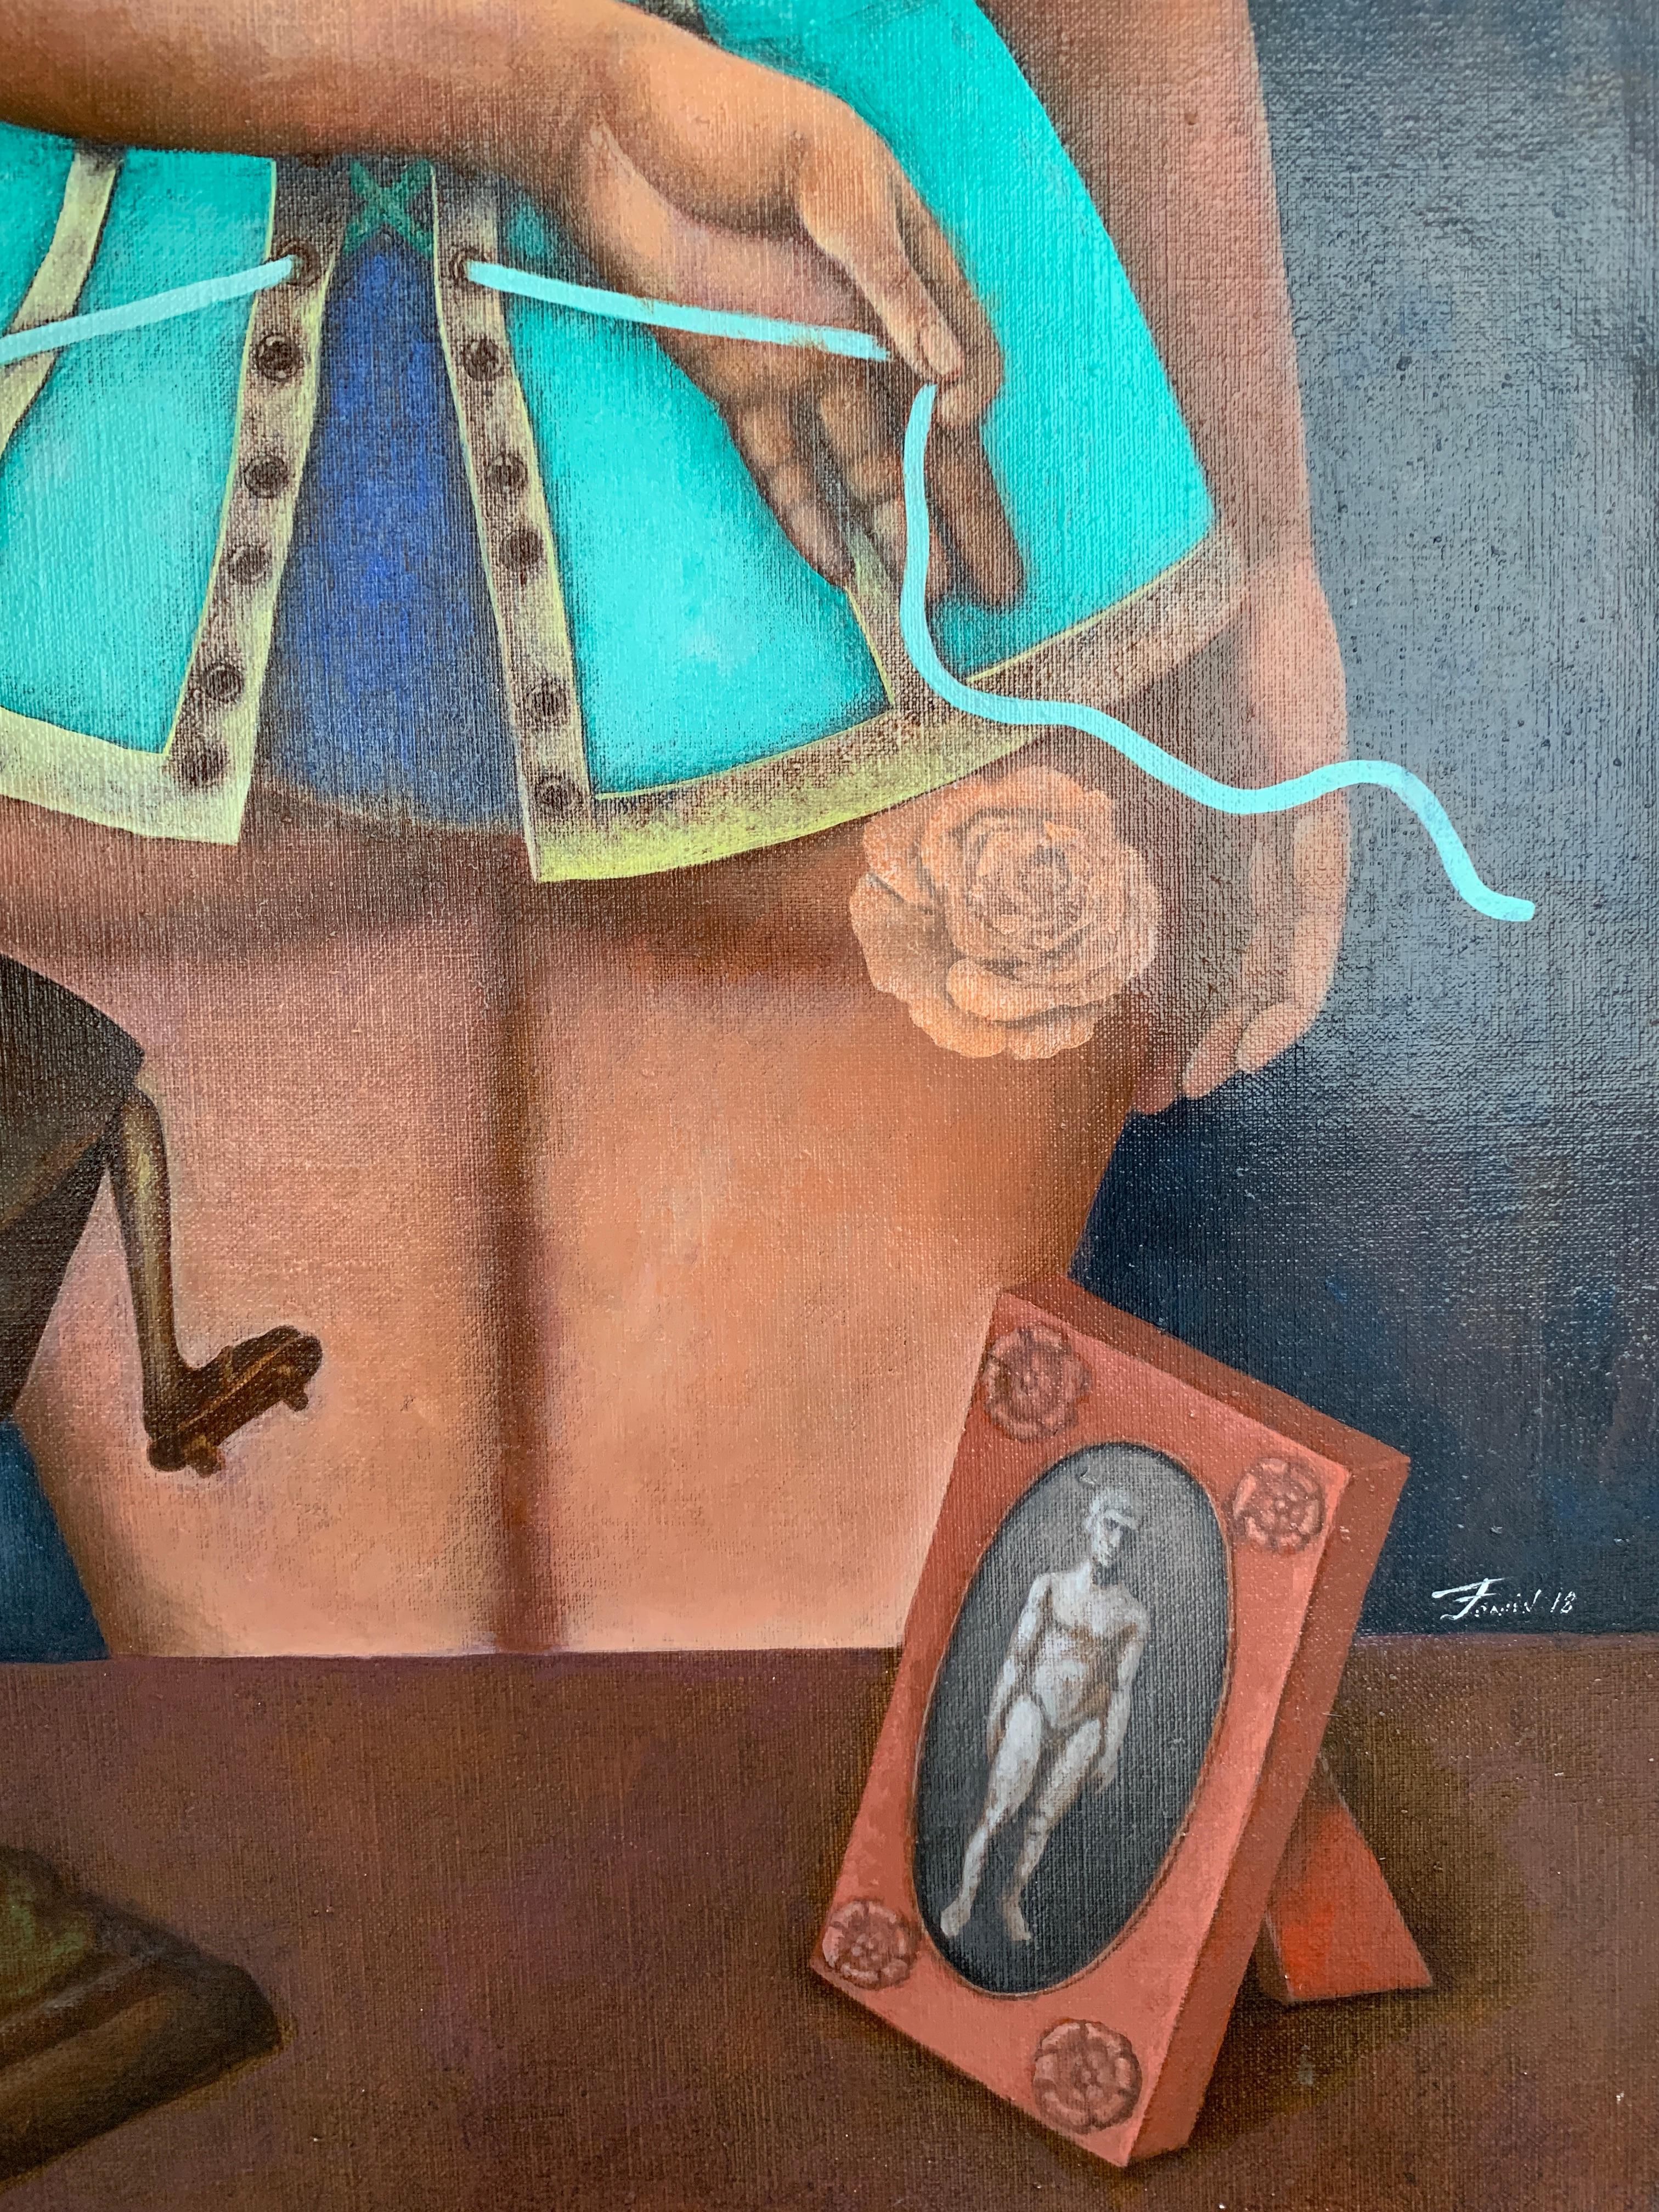 Das Korsett - ein Gänseblümchenmädchen in Korsett, in Grau, Blau, Braun und Türkis gefertigt (Zeitgenössisch), Painting, von Igor Fomin